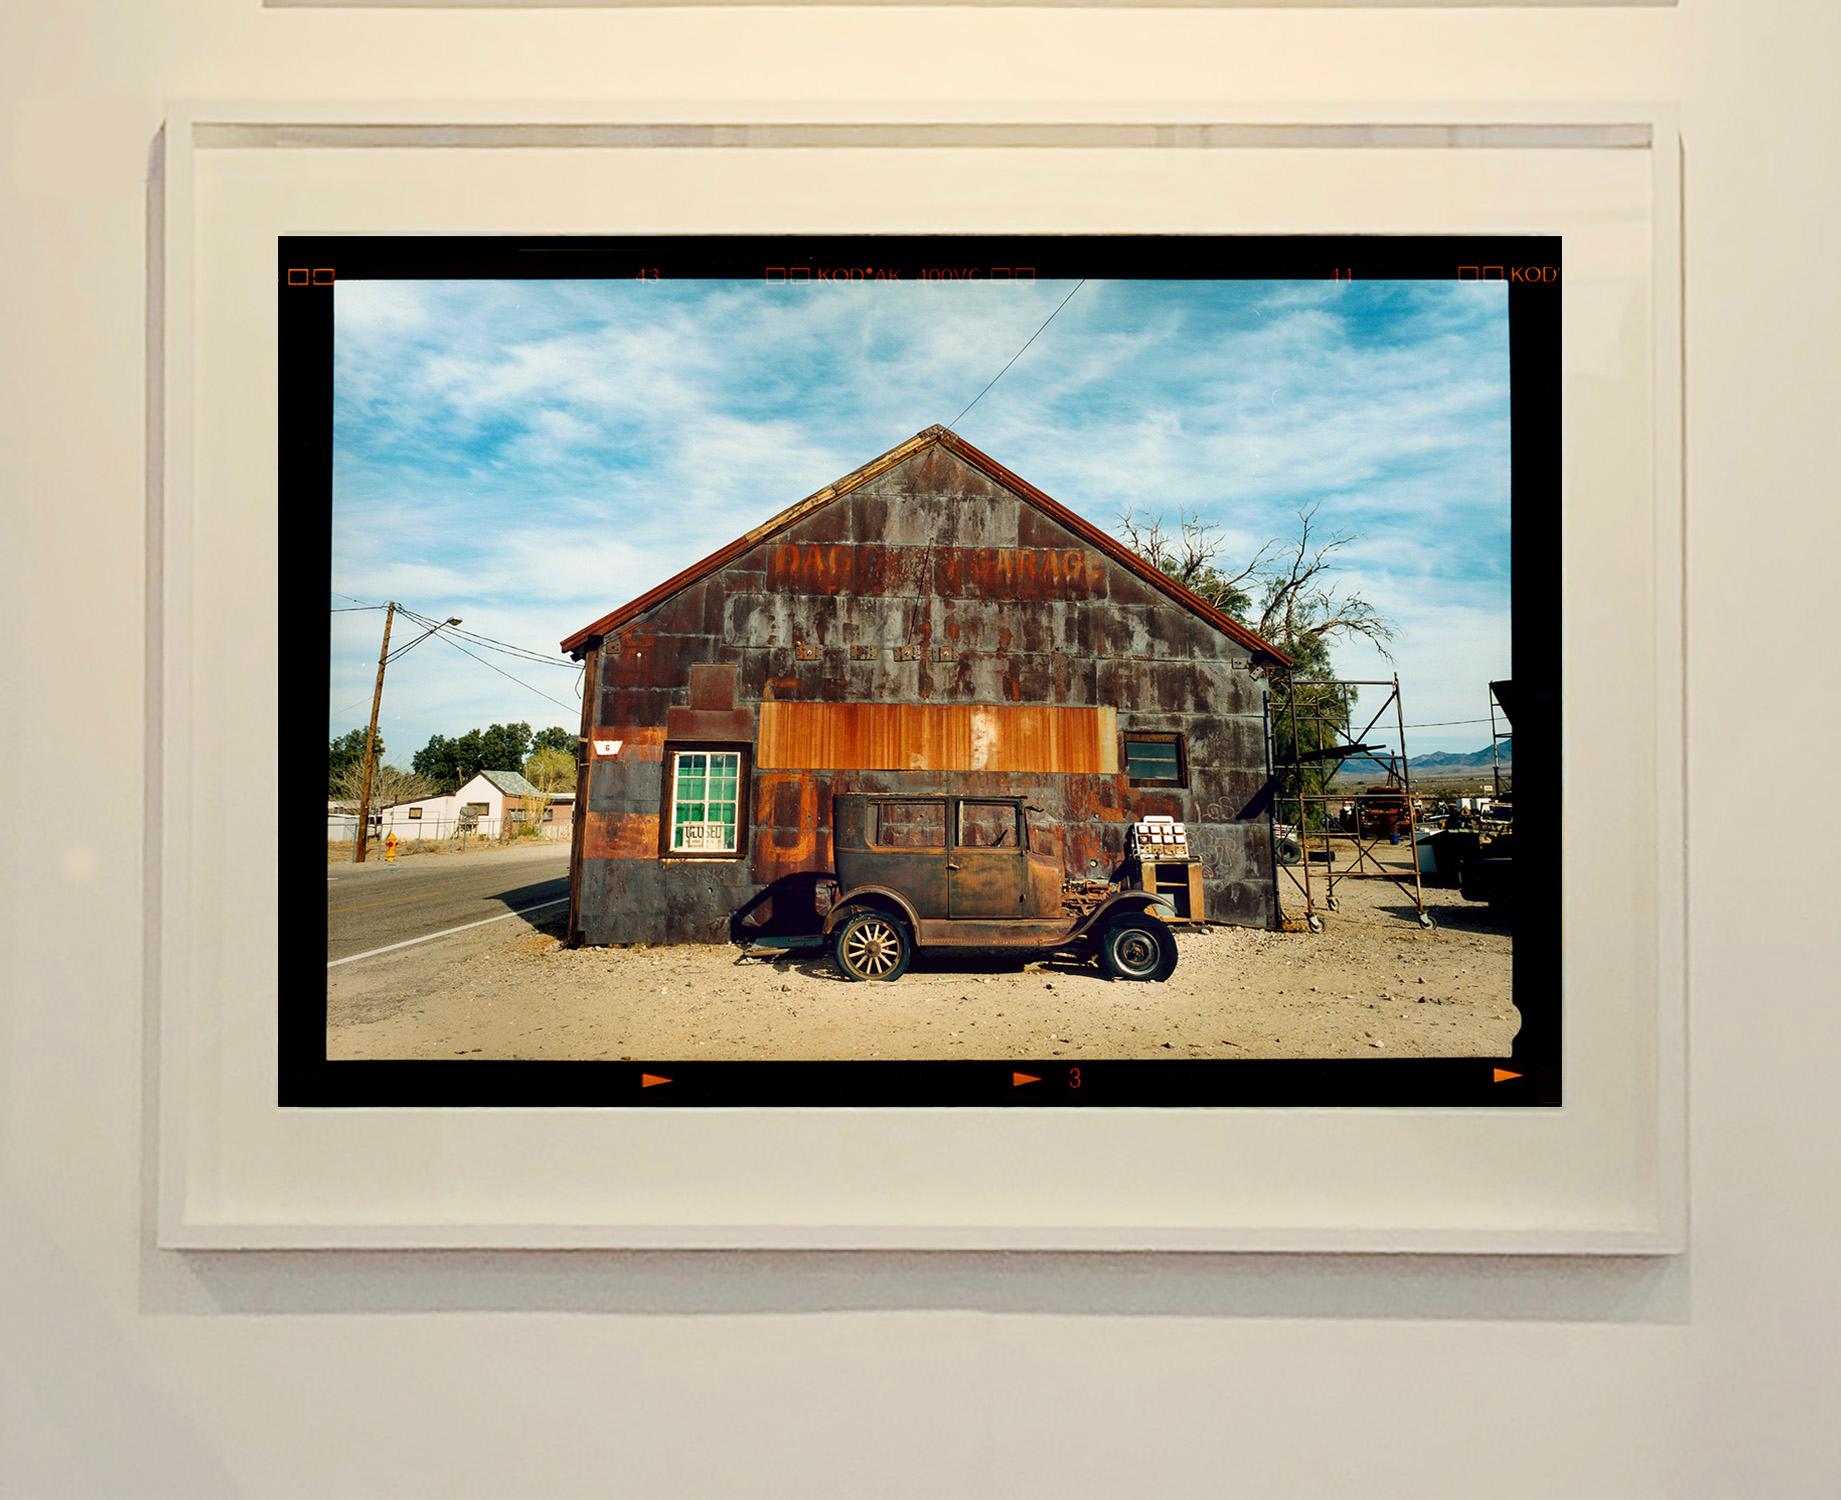 Modell T und Garage, Daggett, Kalifornien – Farbfotografie (Grau), Color Photograph, von Richard Heeps